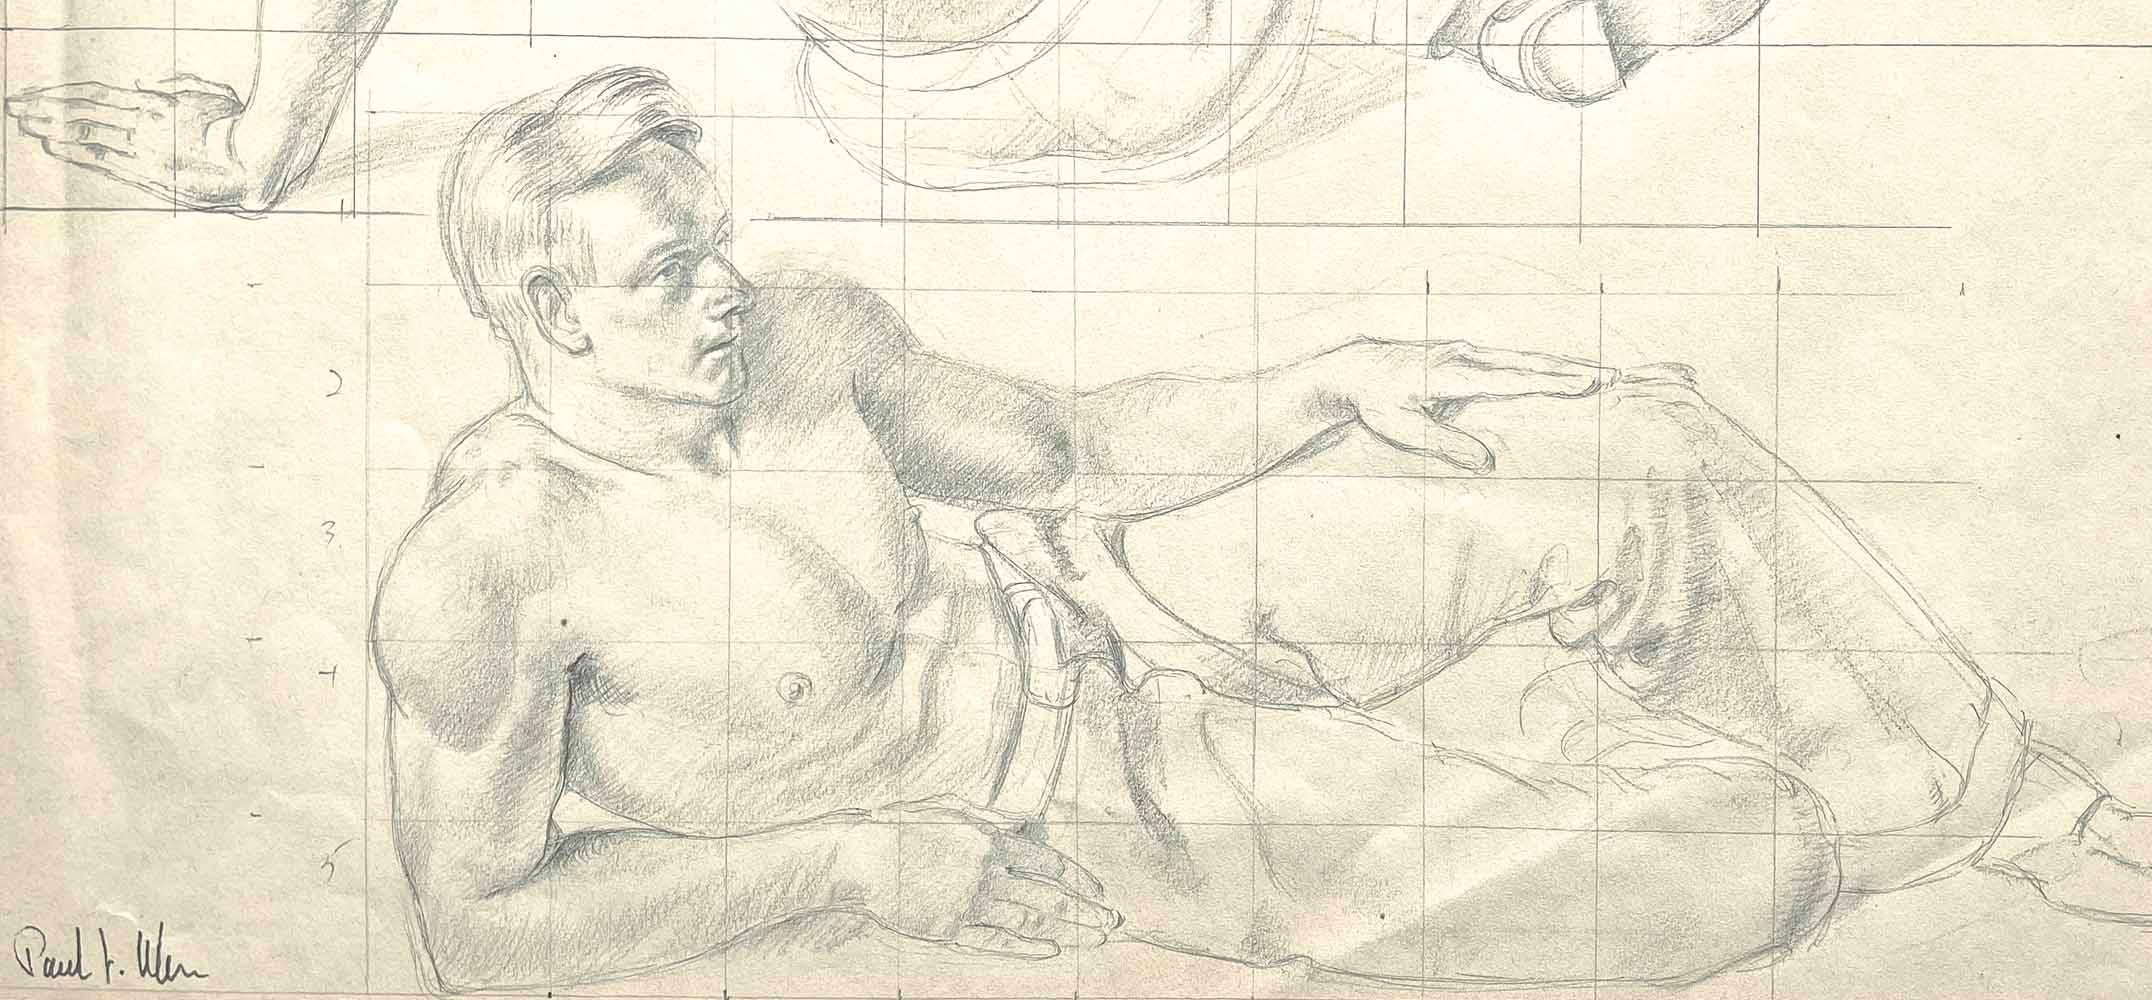 Das von Paul Ulen wunderschön und einfühlsam gezeichnete Einzelblatt zeigt zwei halbnackte männliche Figuren, sitzend und liegend, in lockeren Arbeiterhosen und mit einem modischen Haarschnitt aus den 1930er Jahren.  In jedem Fall kommt der starke,